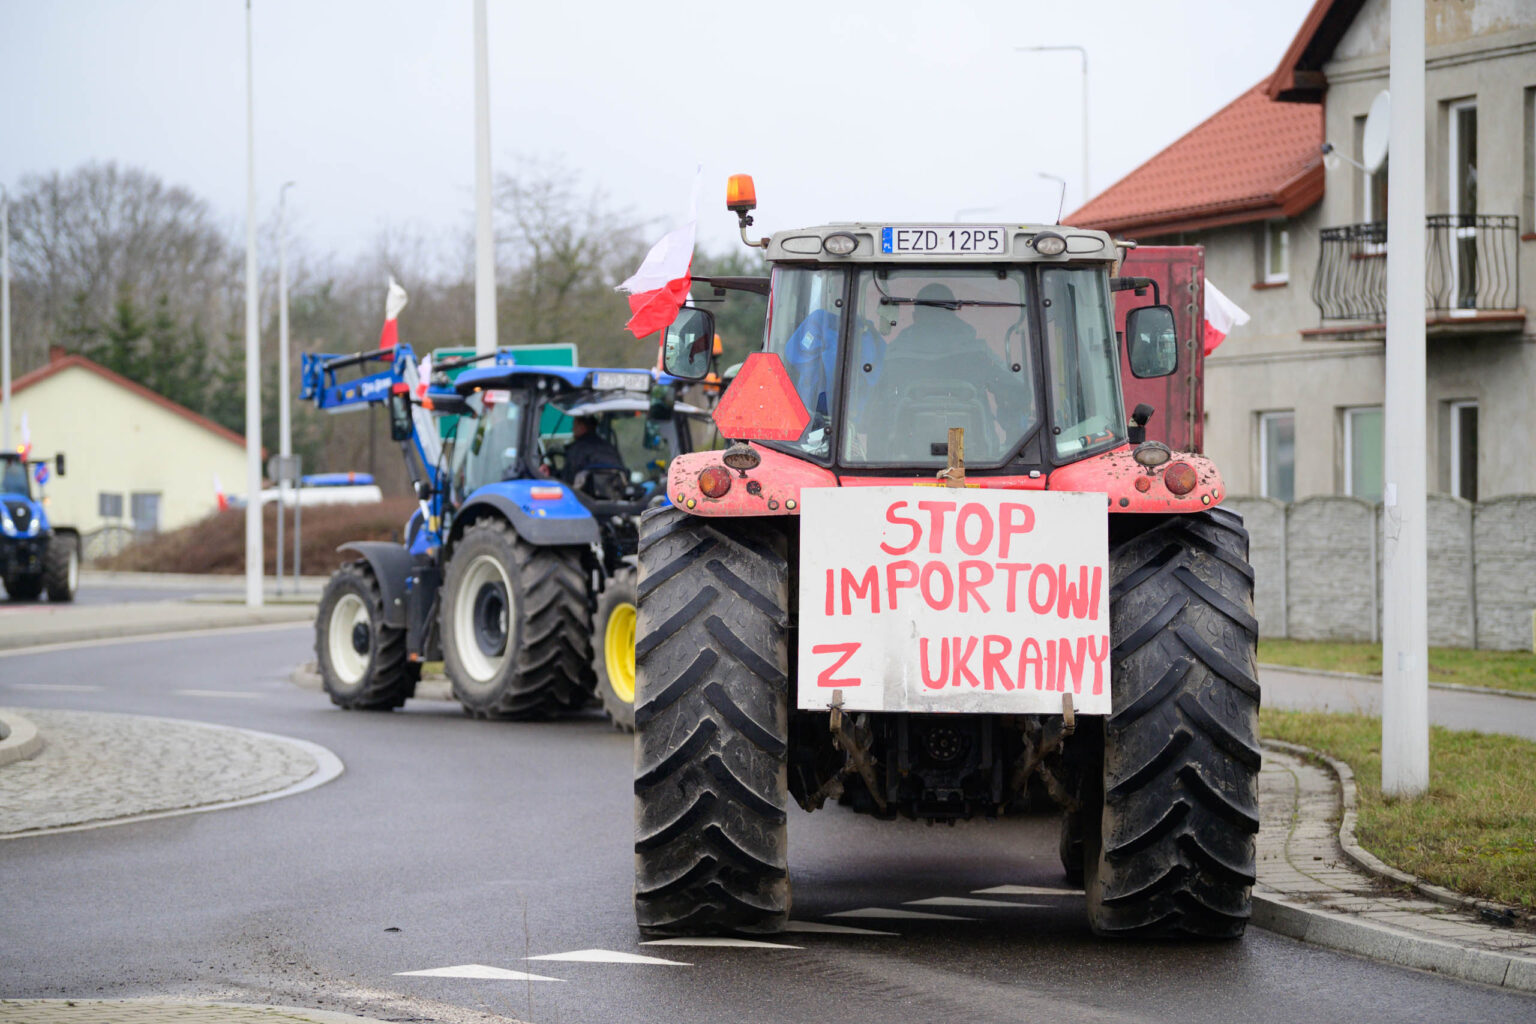 Protest rolniczy w Poddebicach i spotkanie z Wojewoda 36